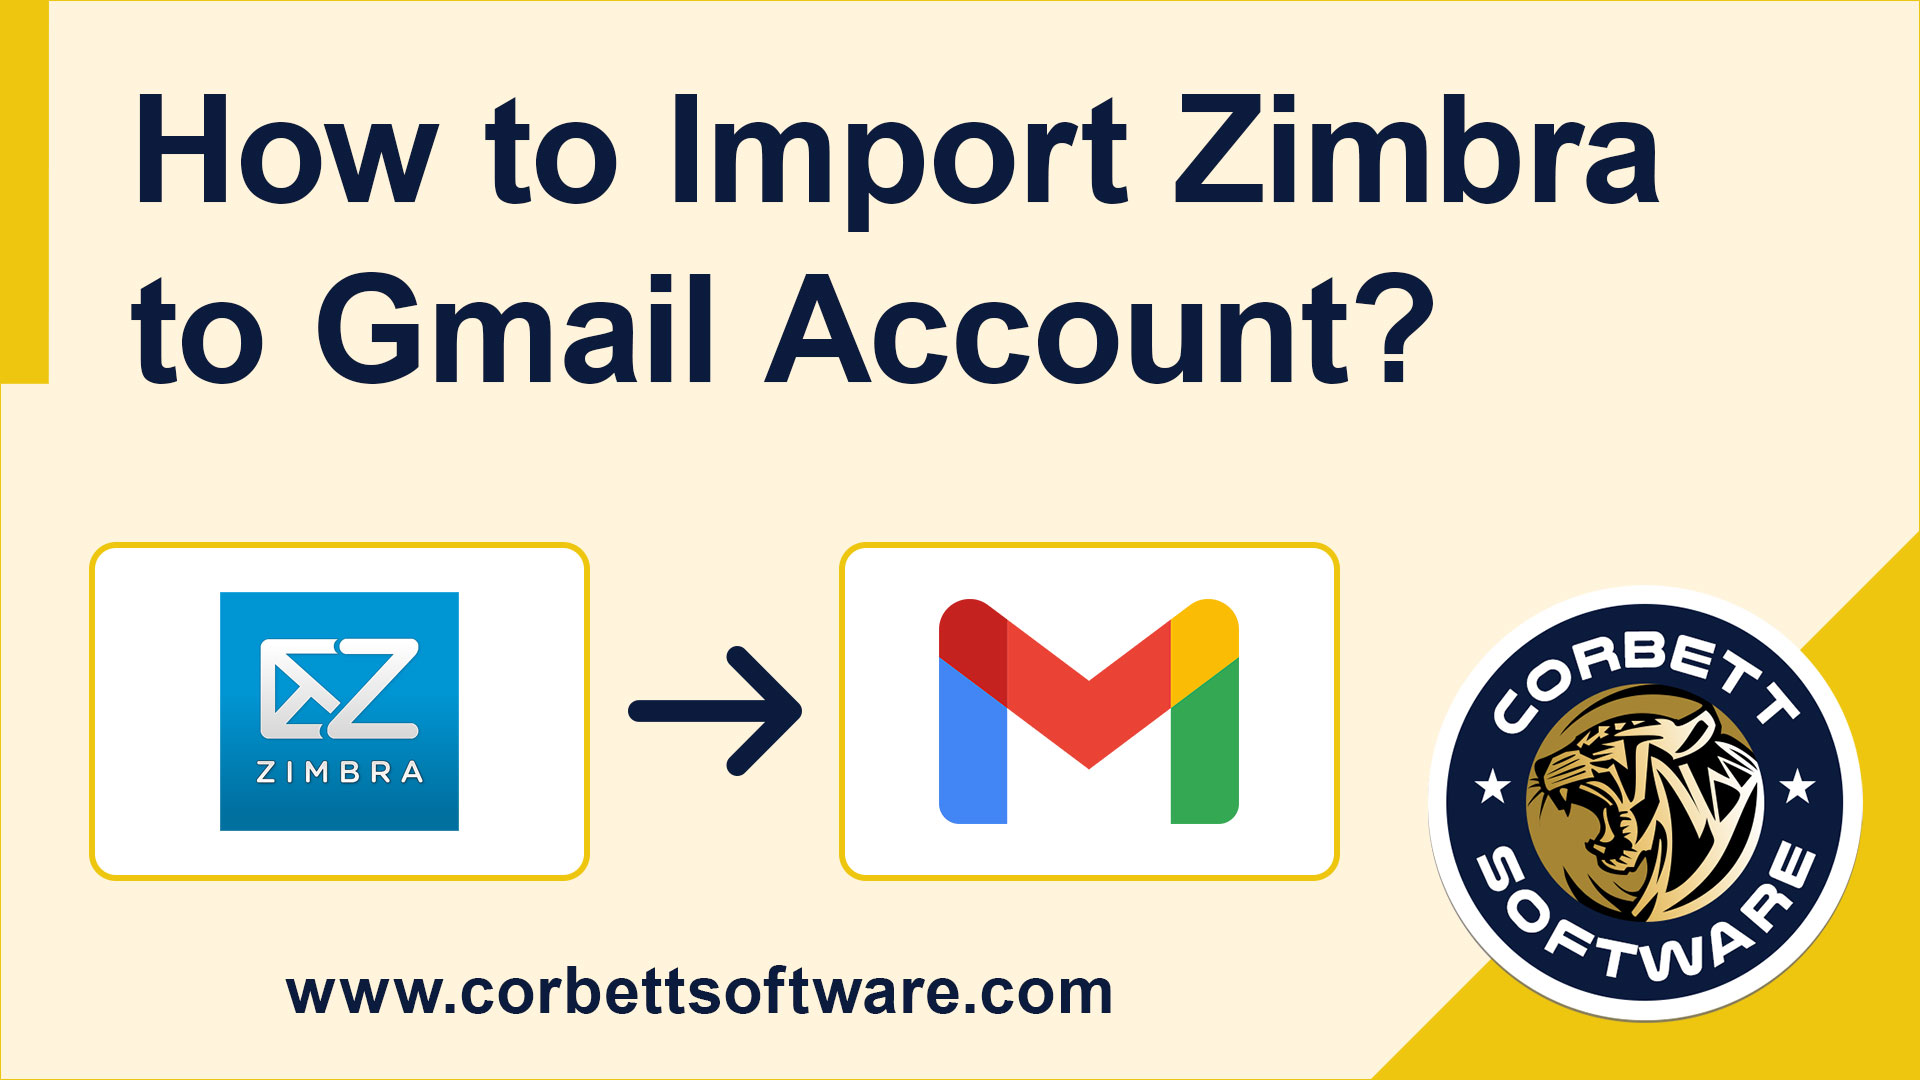 Import Zimbra to Gmail